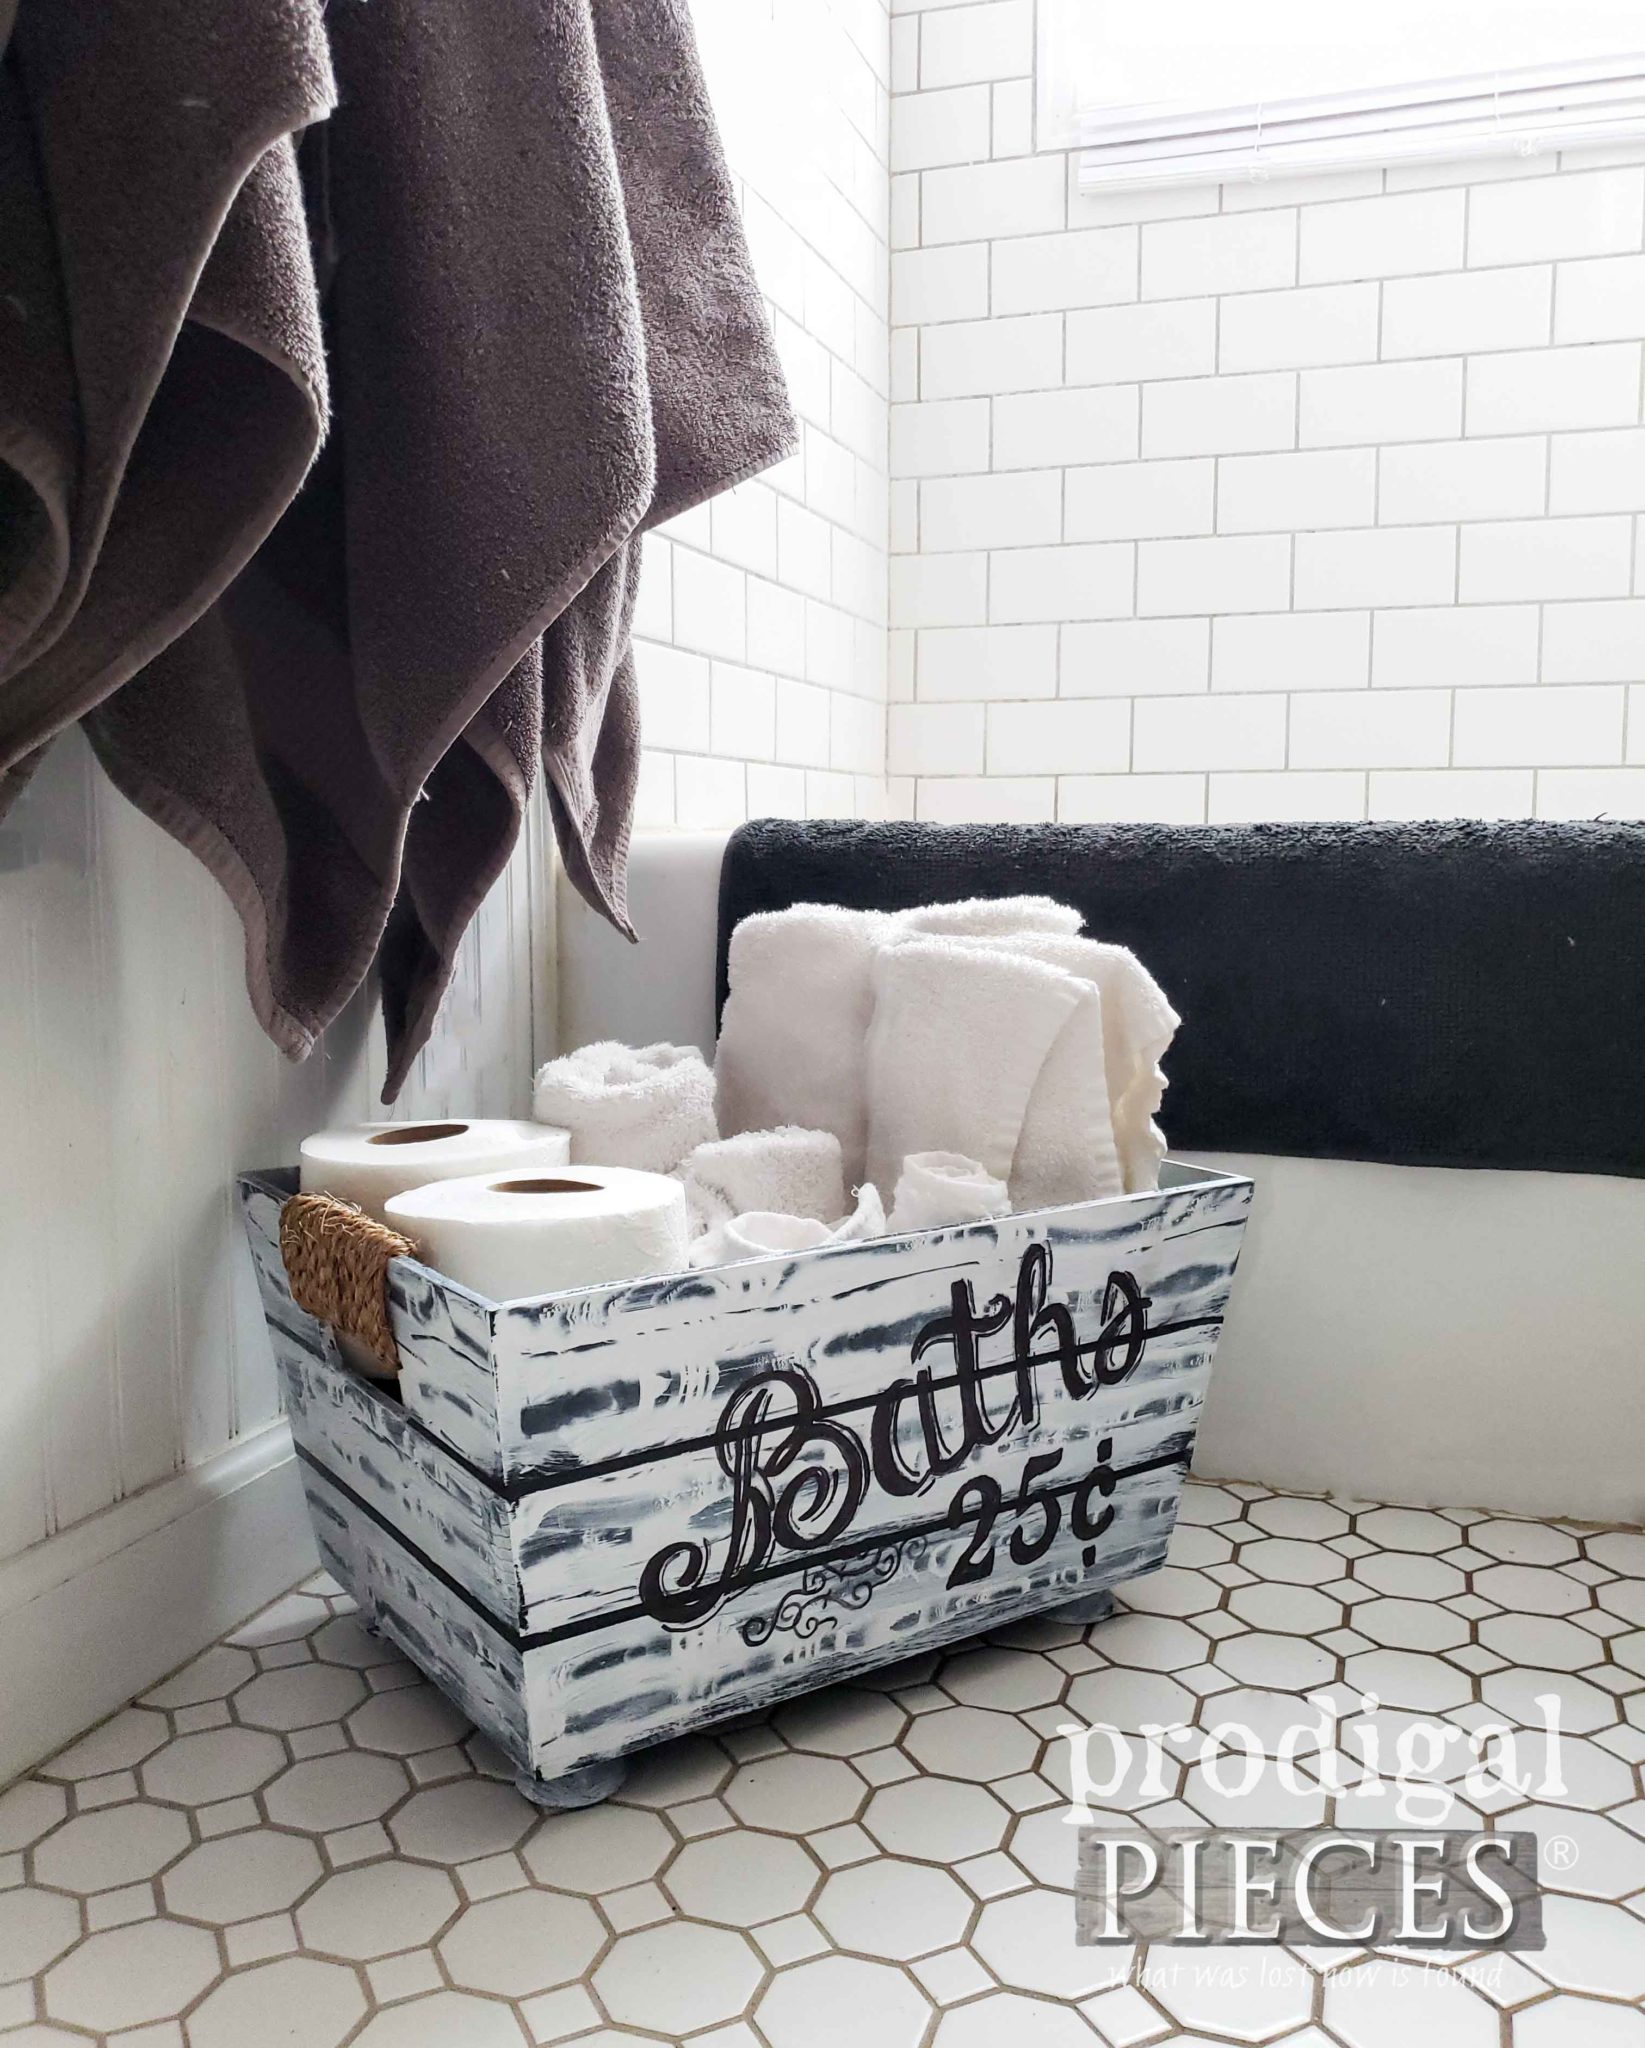 DIY Farmhouse Bathroom Towel Holder TP Holder by Larissa of Prodigal Pieces | prodigalpieces.com #prodigalpieces #diy #handmade #home #shopping #farmhouse #homedecorideas #homedecor